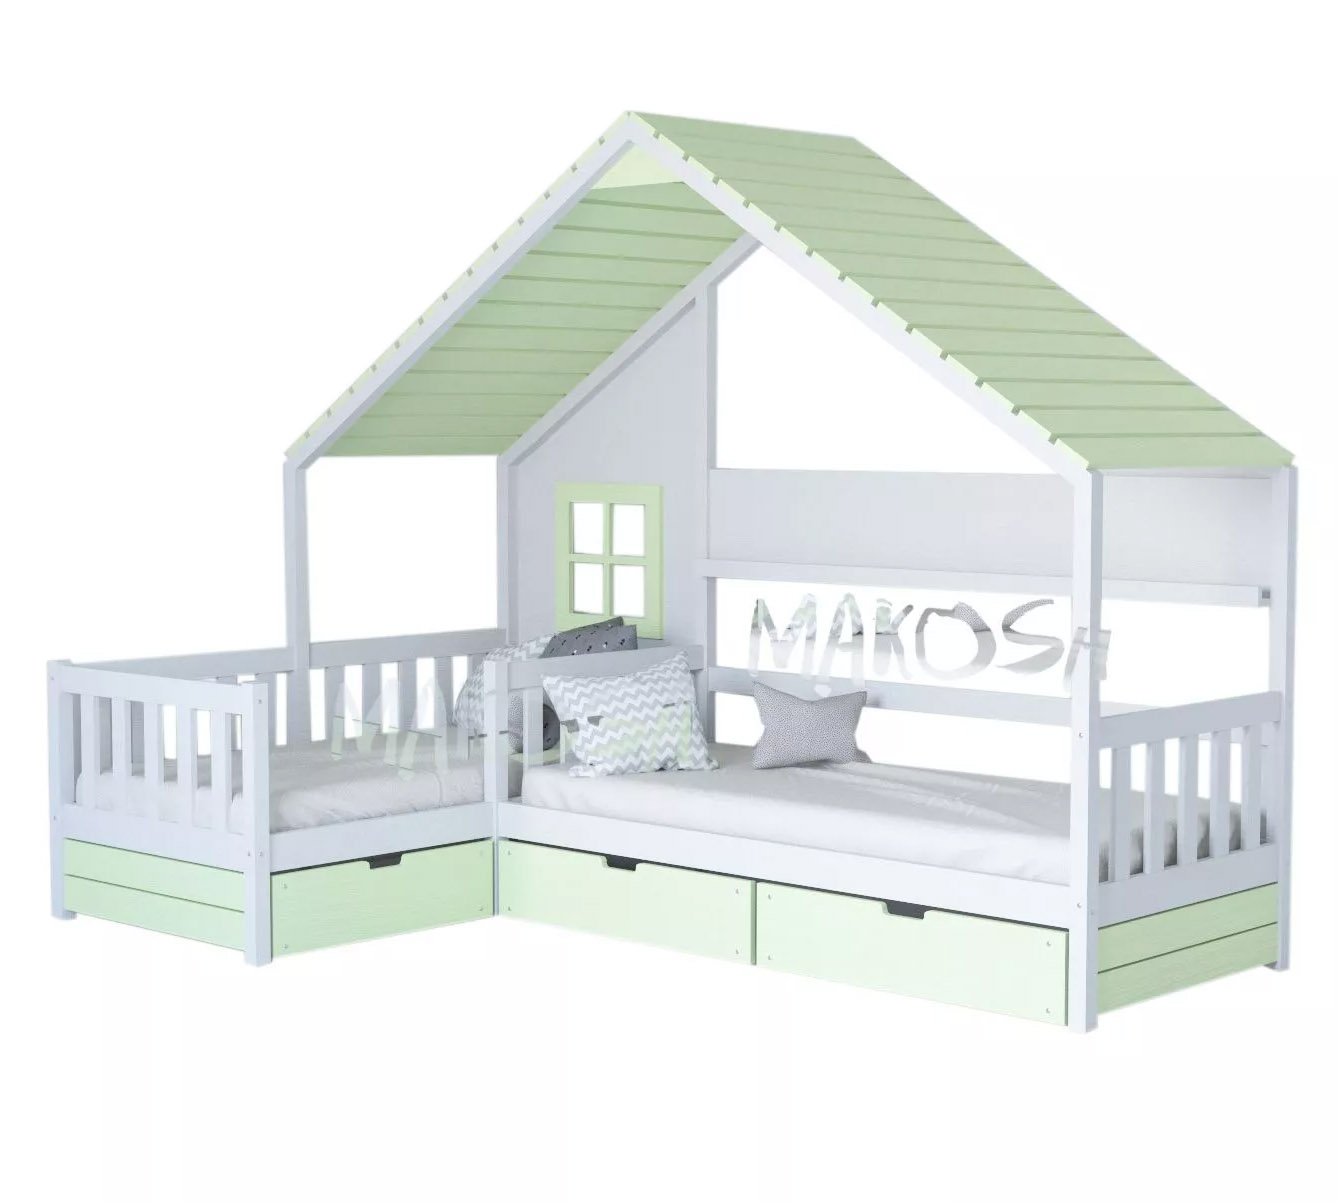 картинка МОНБЛАН детская угловая кровать-домик для двоих детей интернет-магазин Энигуд.ру